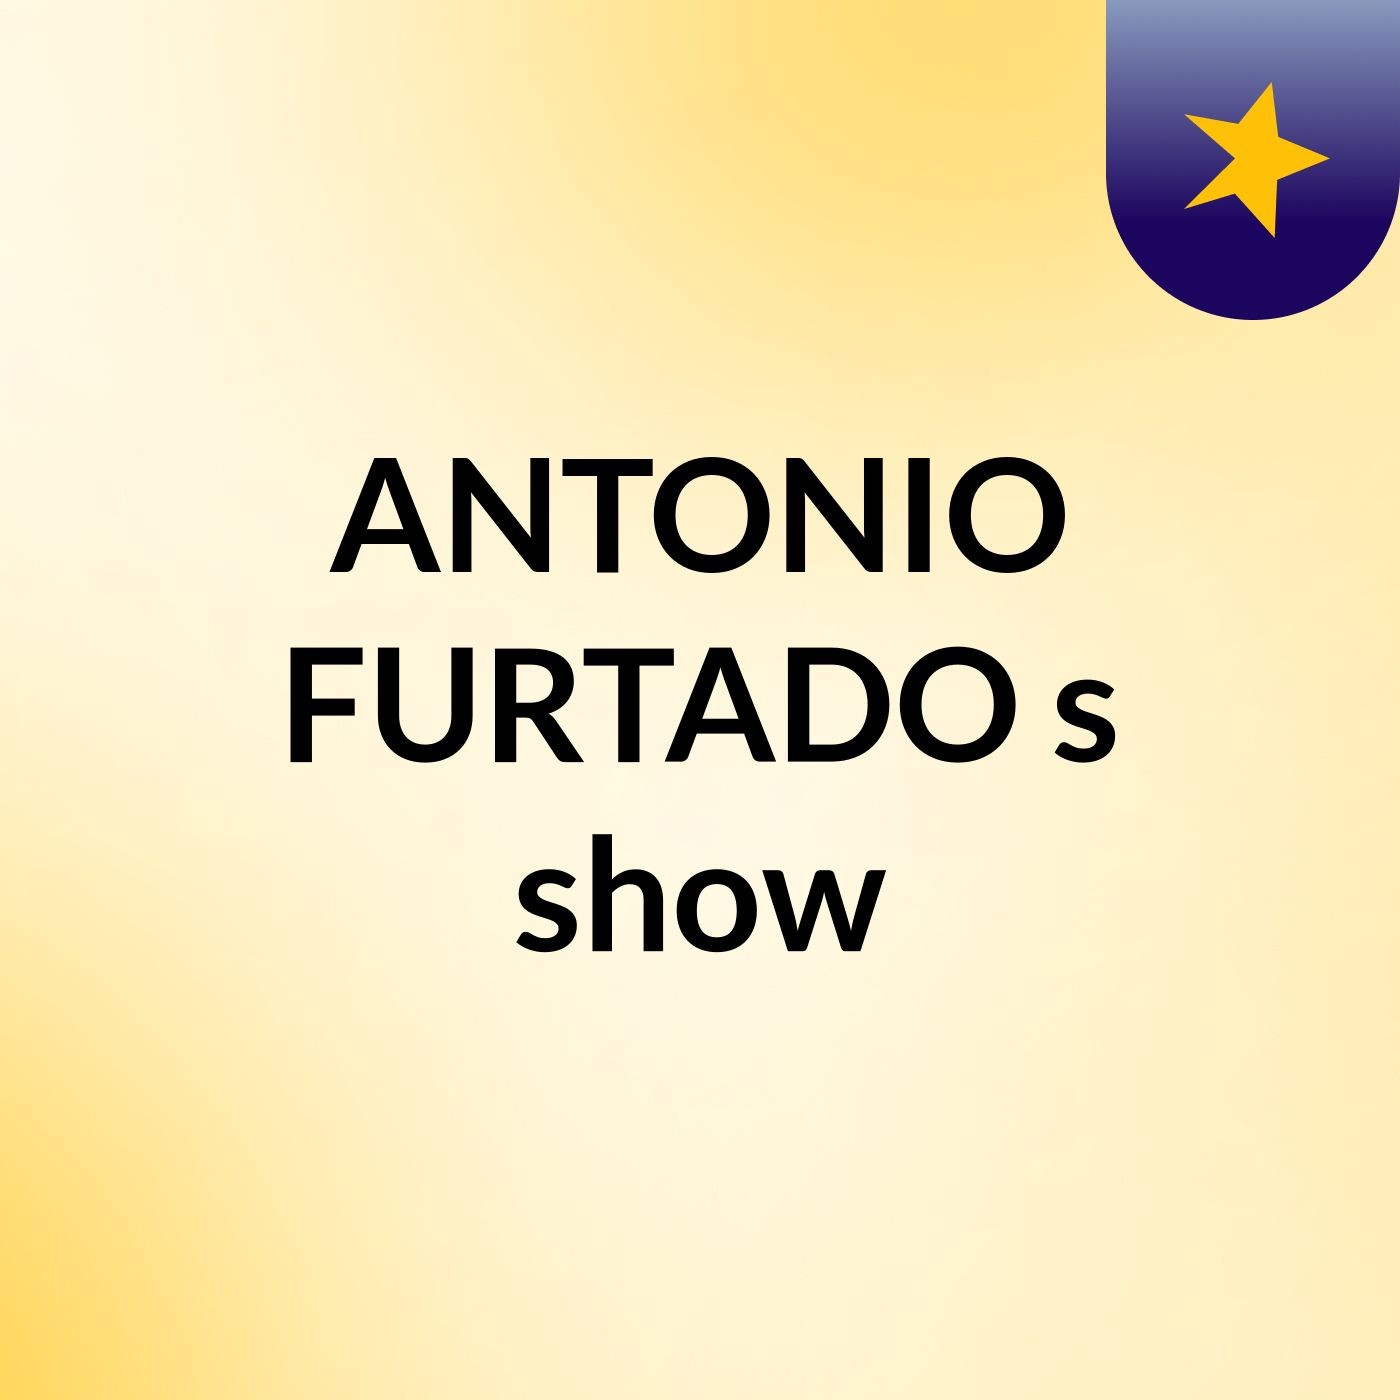 ANTONIO FURTADO's show